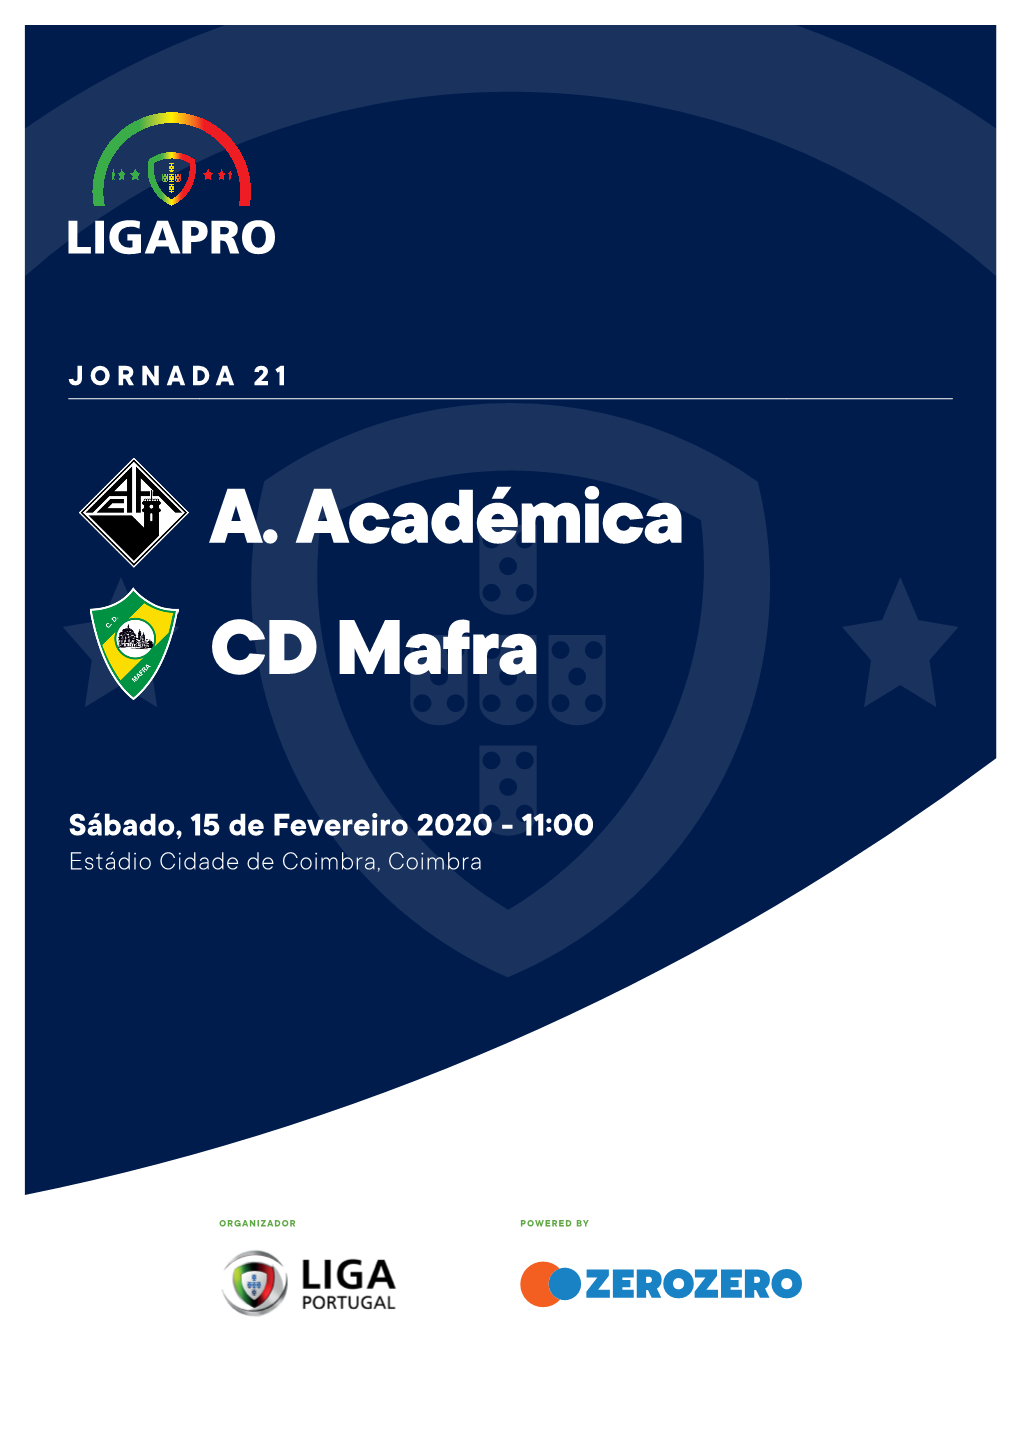 A. Académica CD Mafra